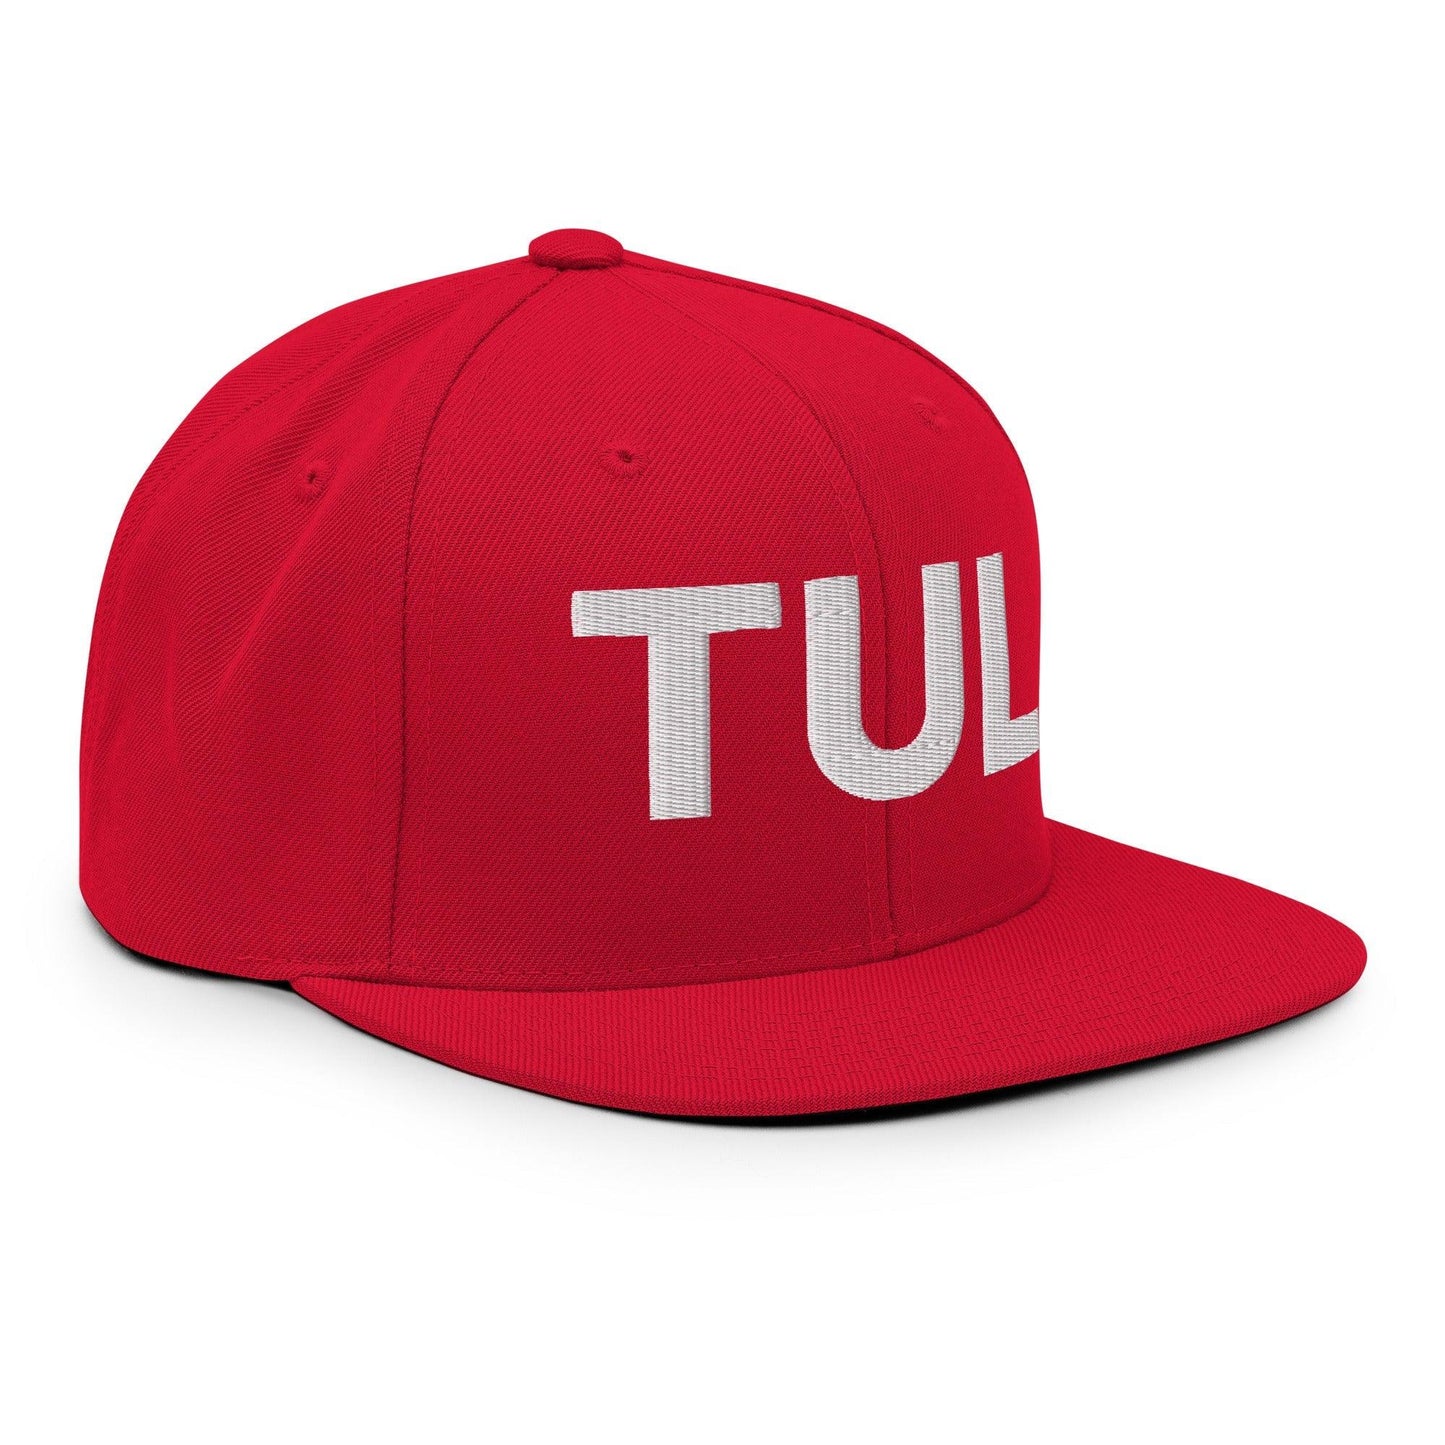 Tulsa TUL Vintage Block Snapback Hat Red